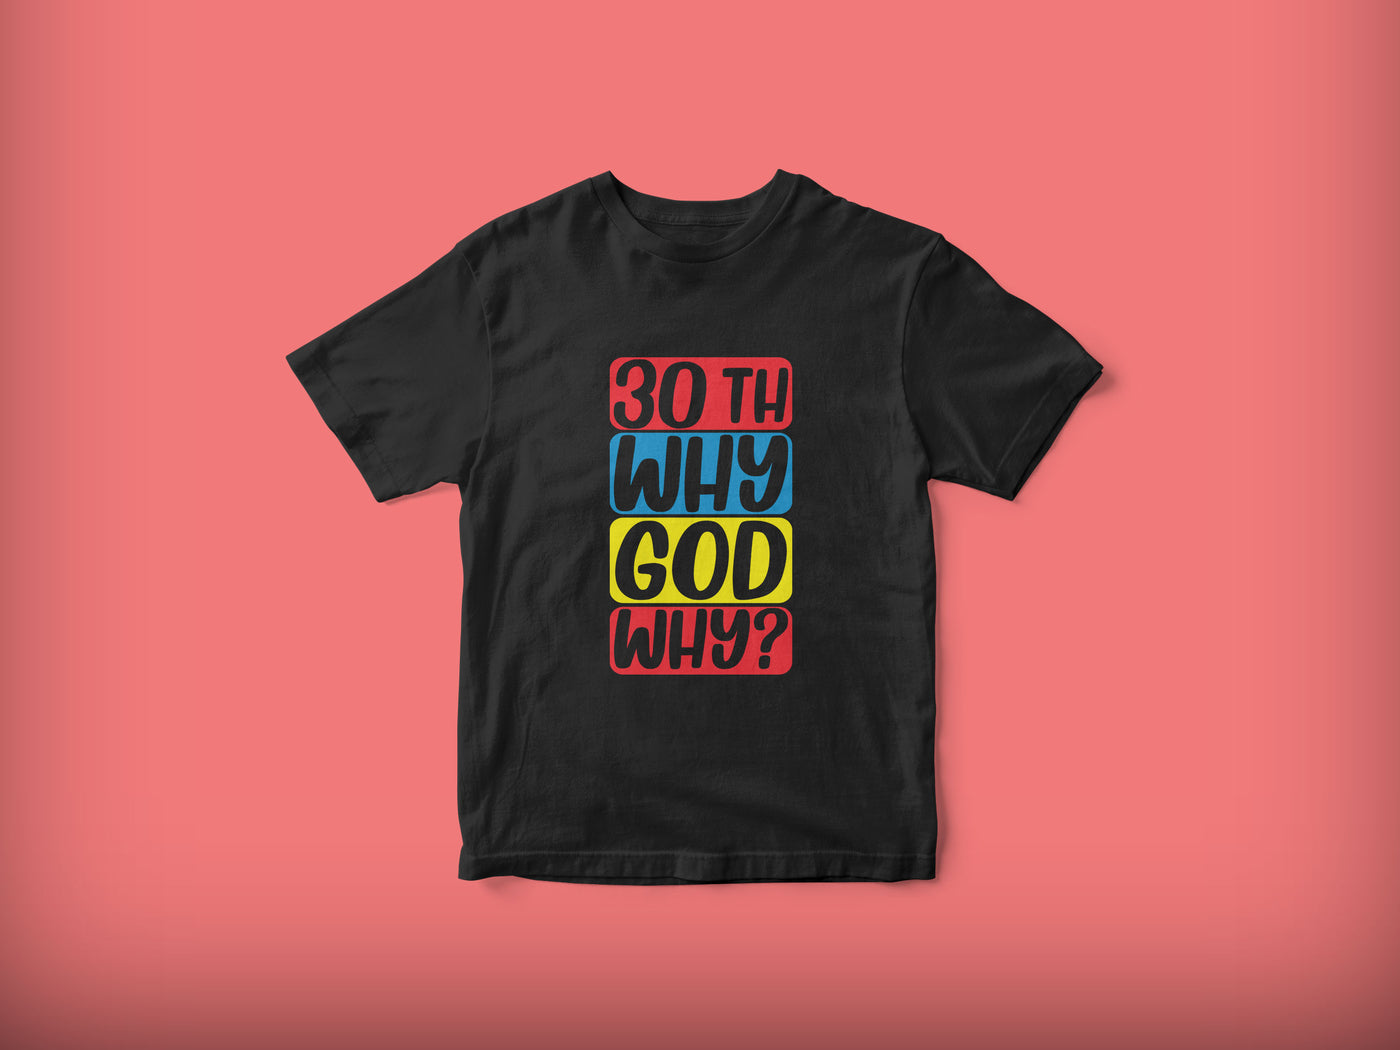 30th Why God